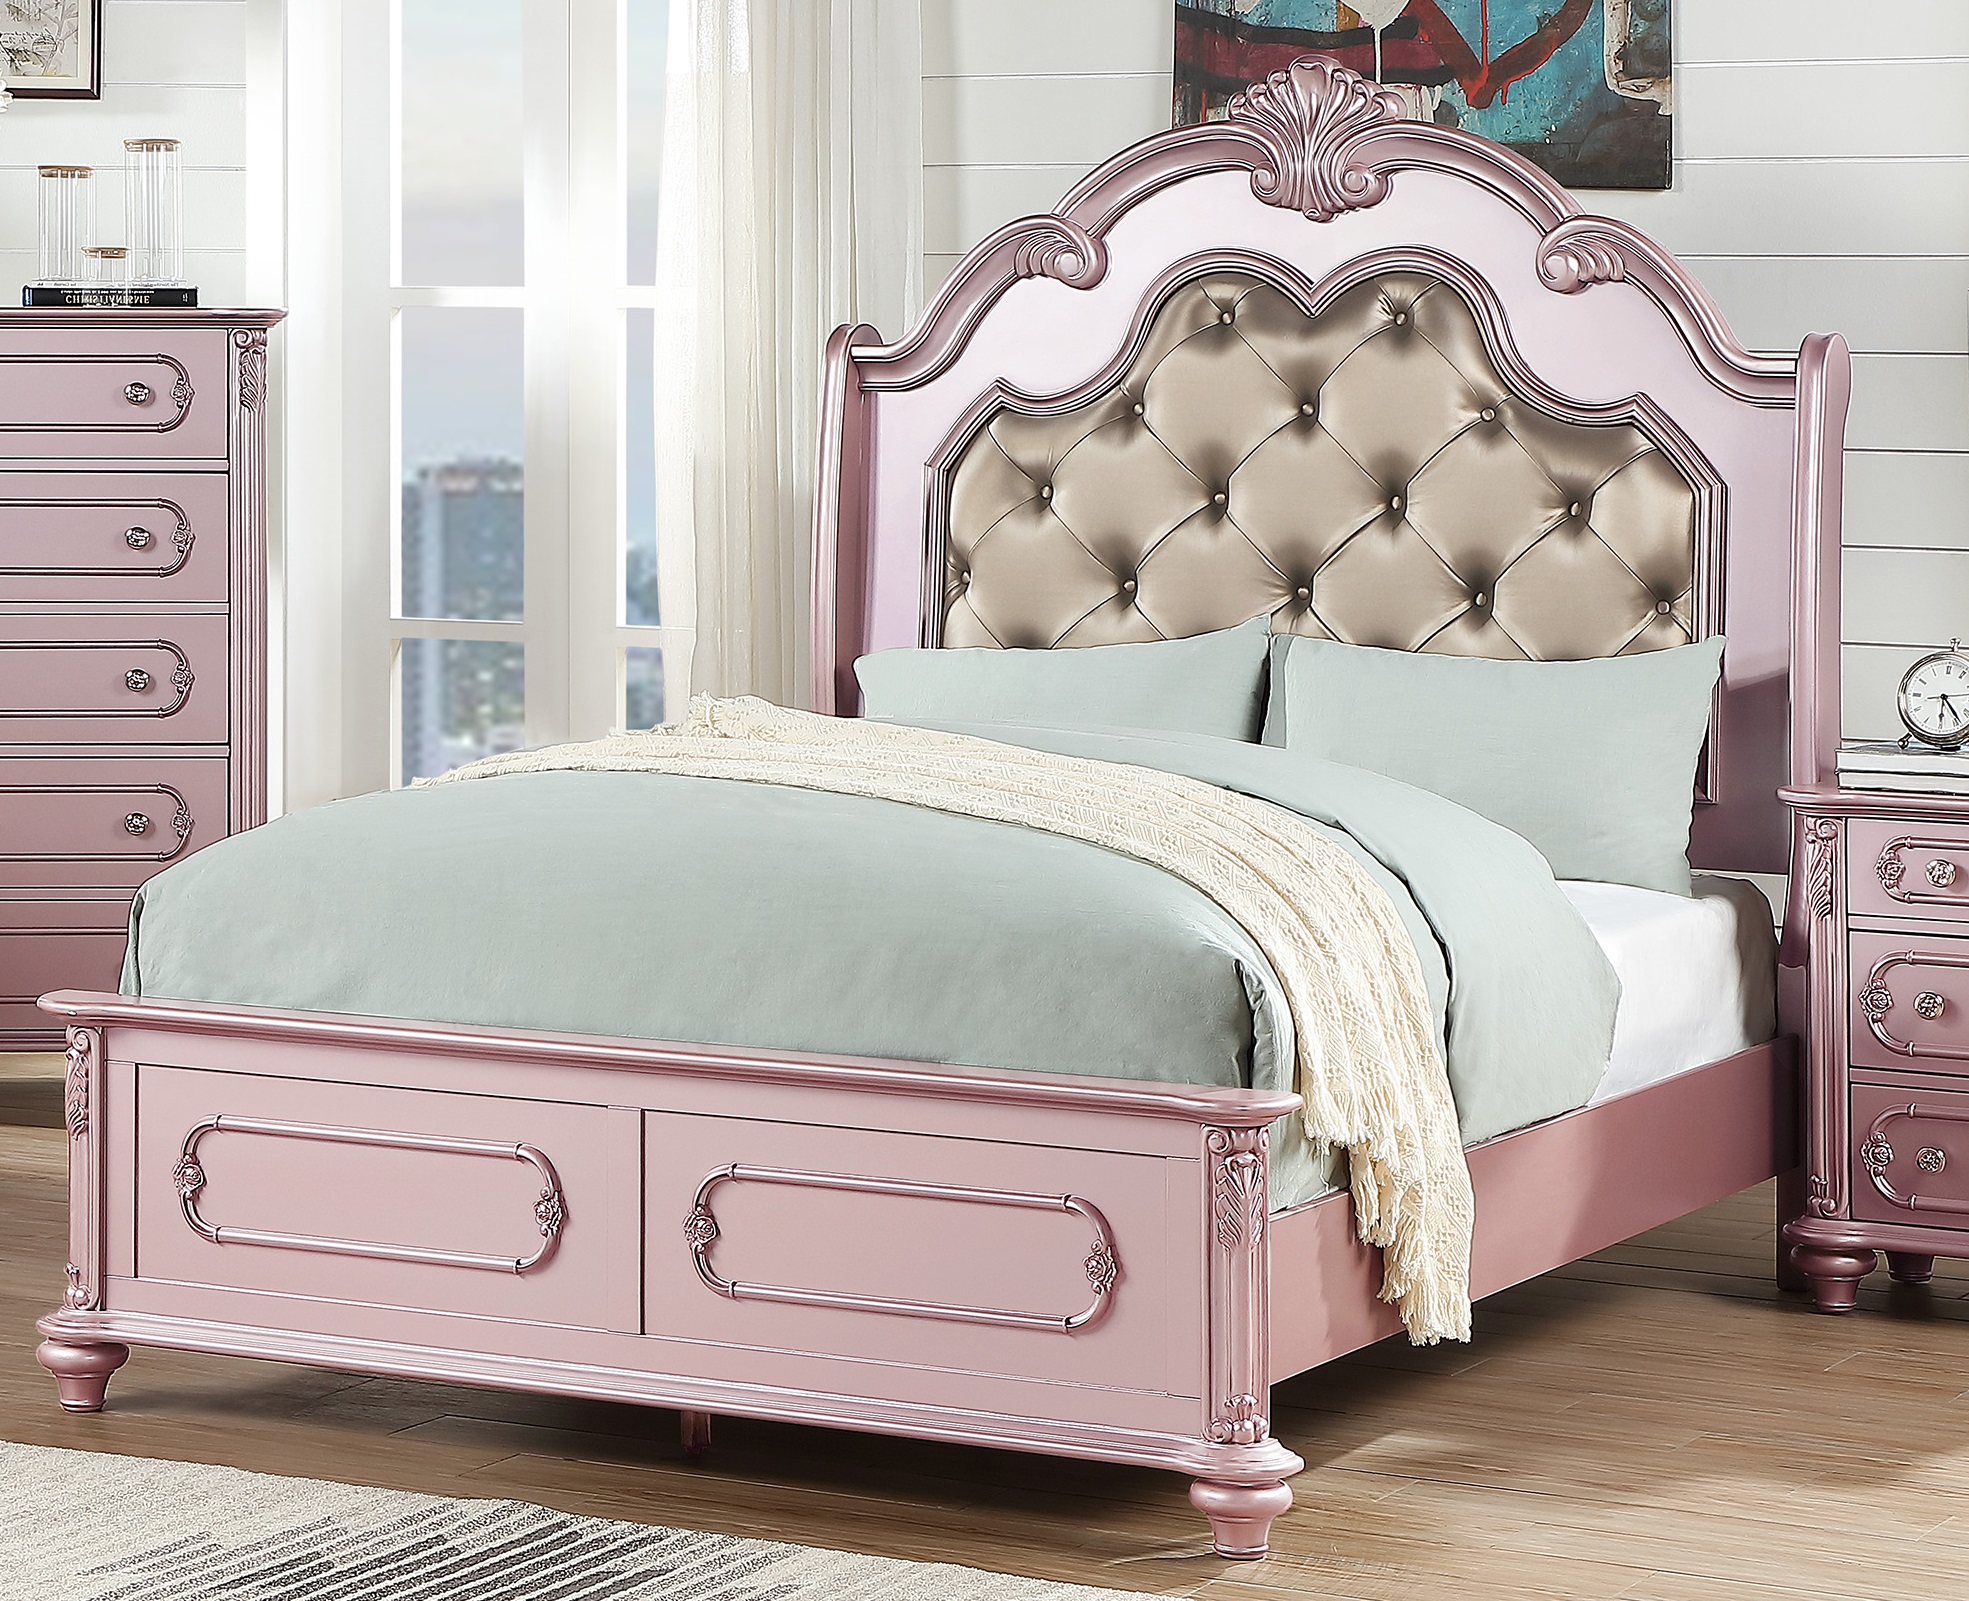 Esofa 1pc Bedroom Queen Size Bed, Rose Gold Headboard Queen